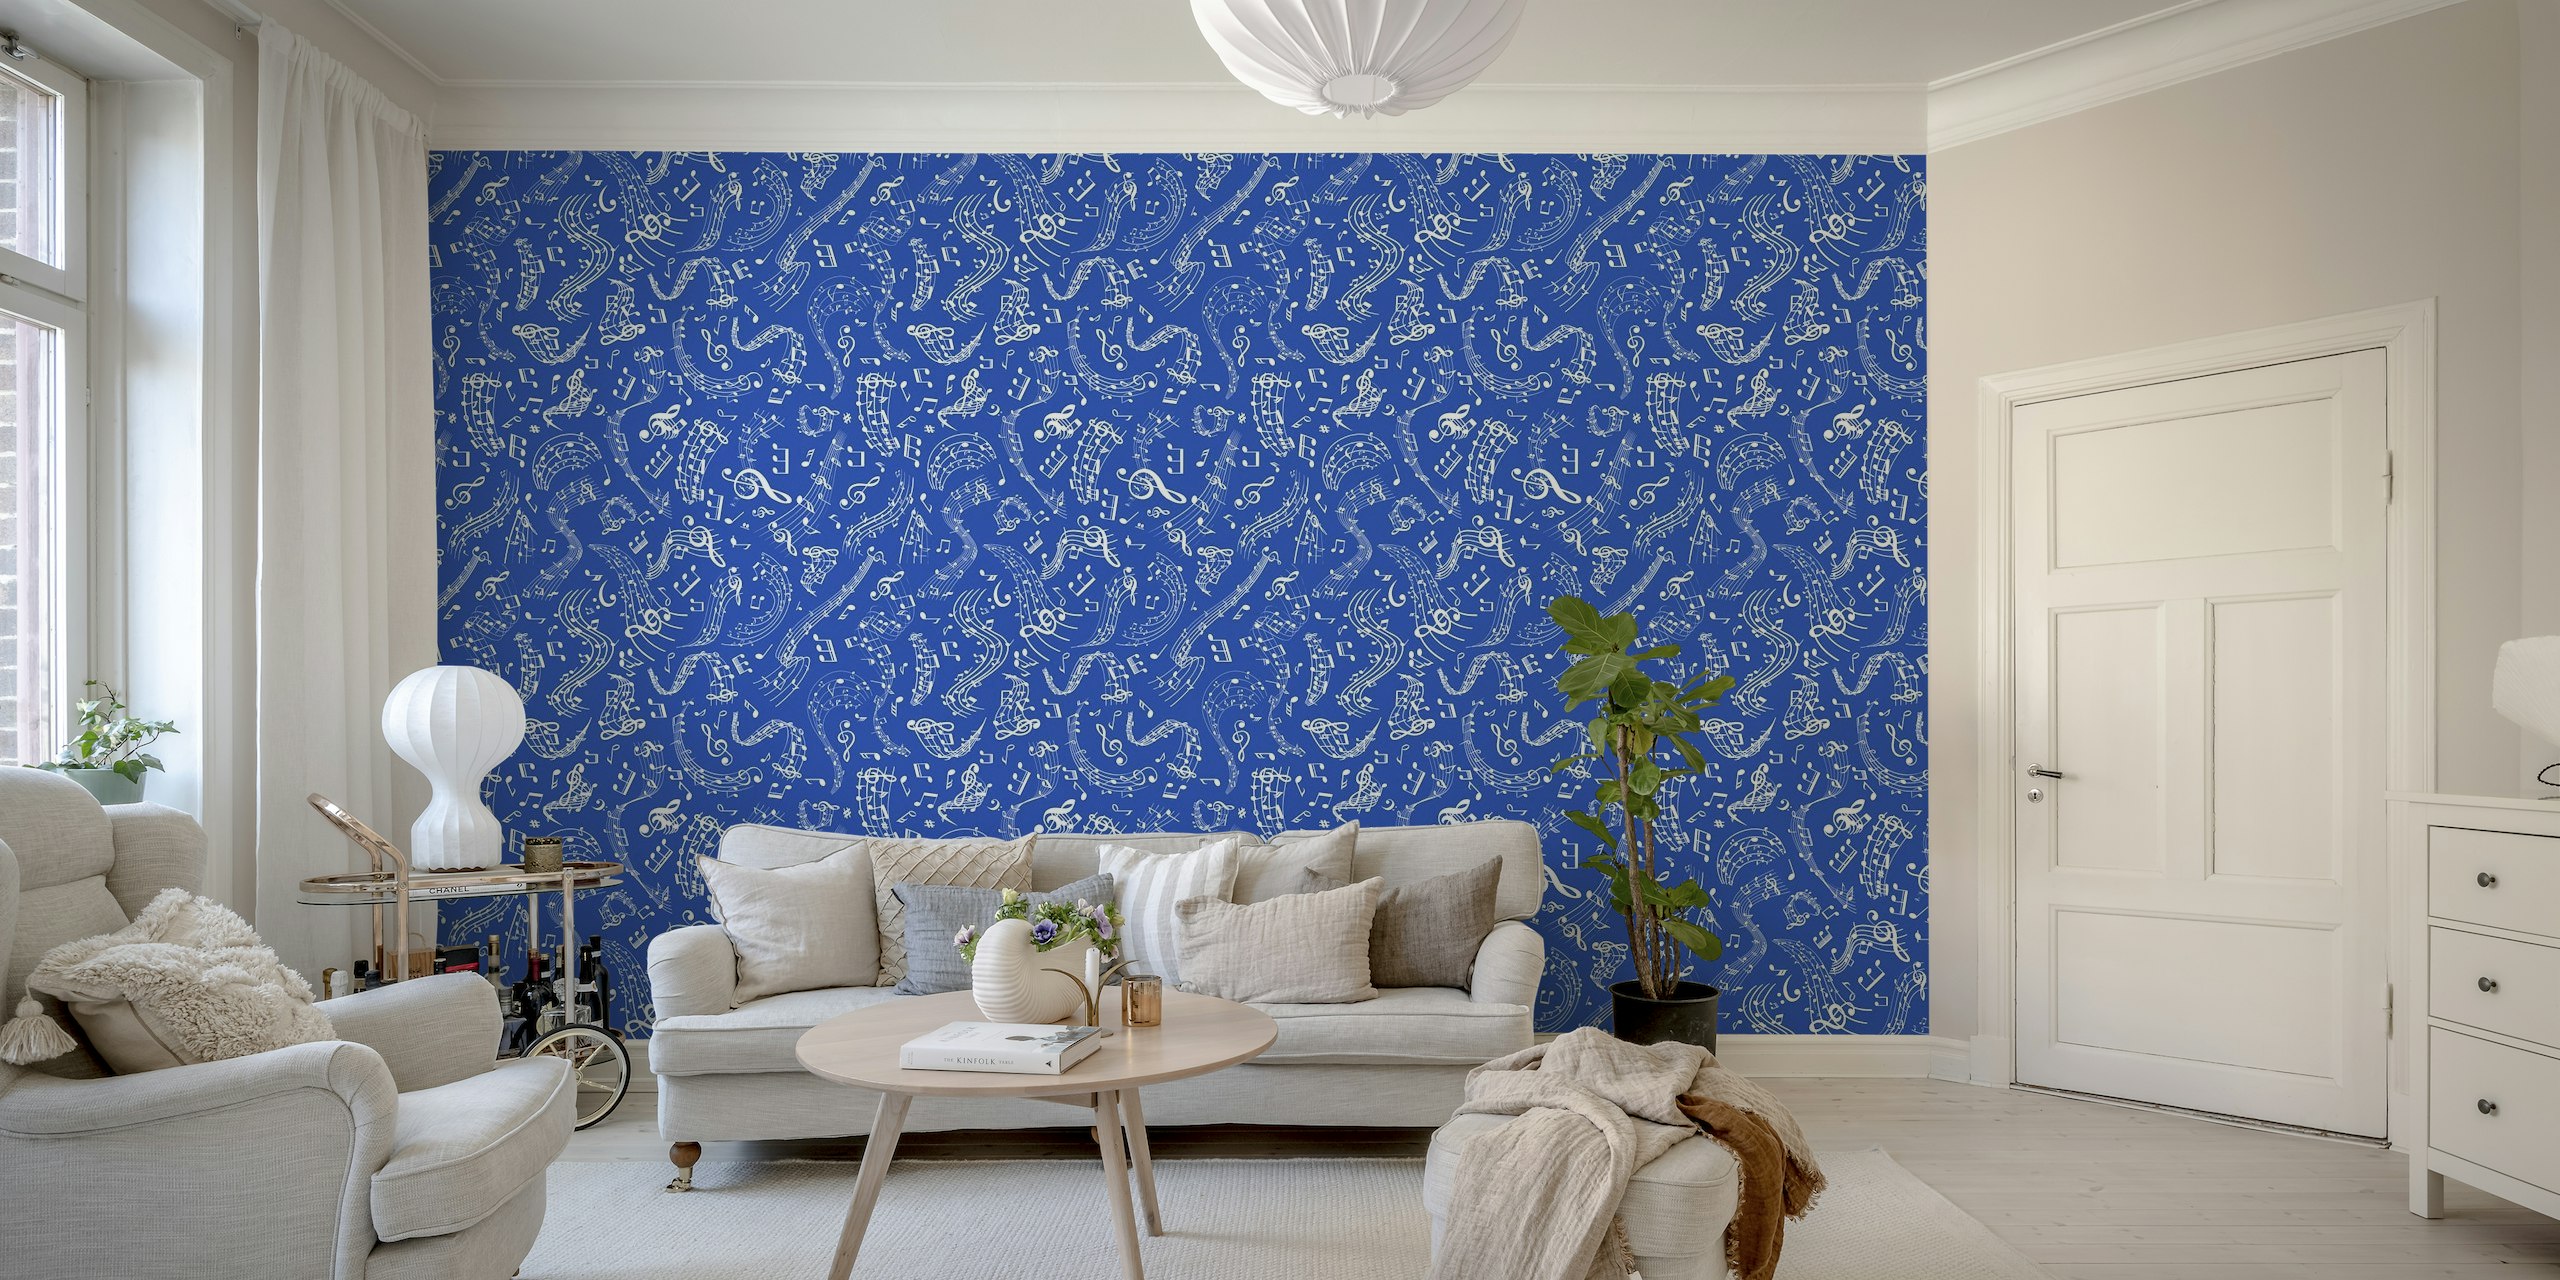 Koboltblå vægmaleri med hvide noder og symboler mønster